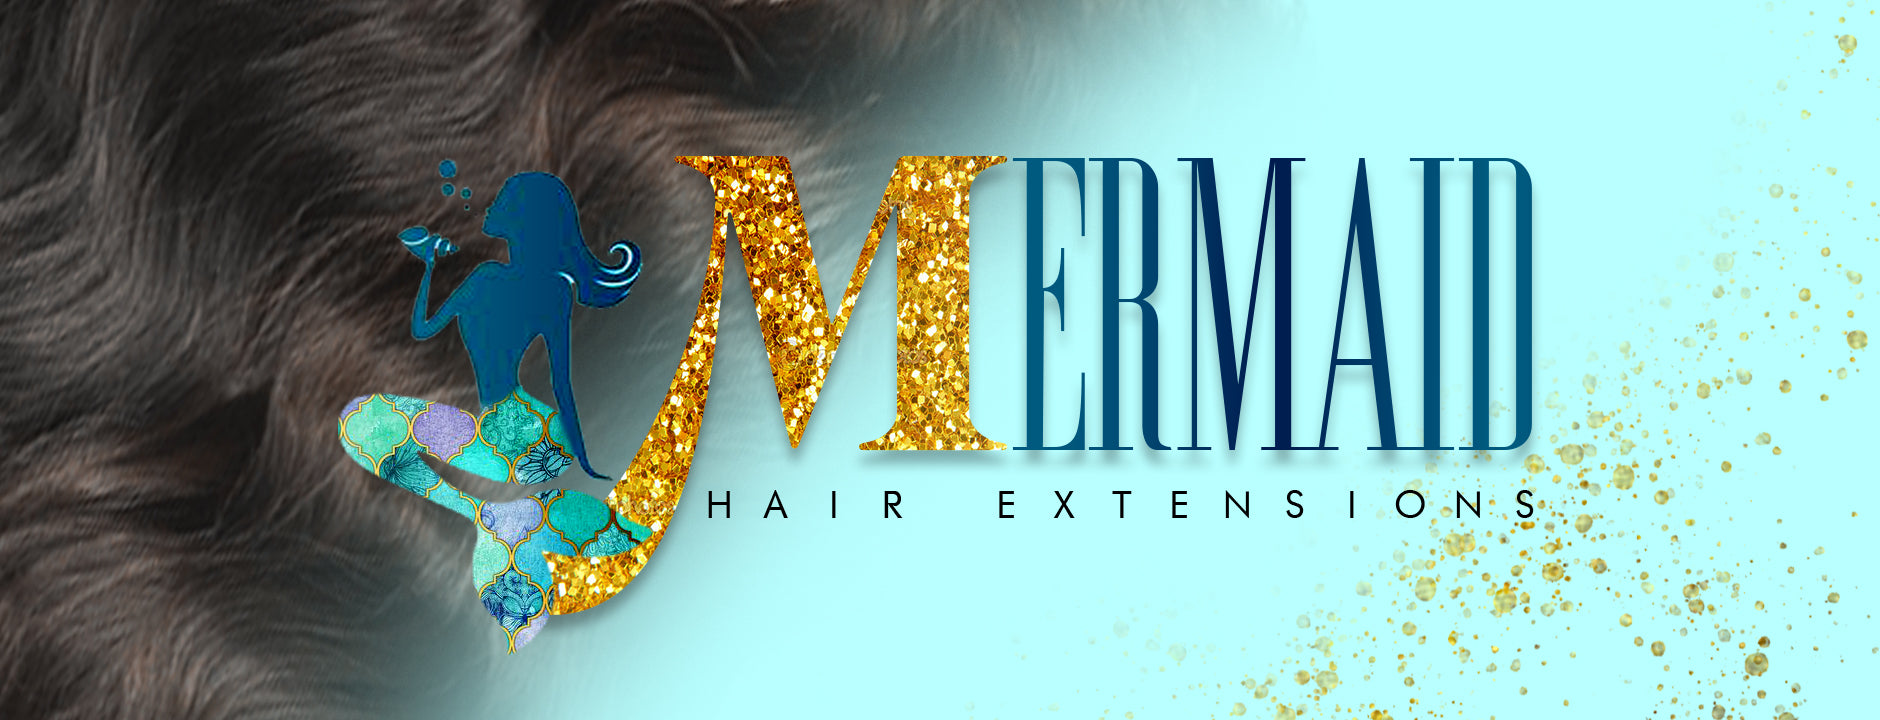 Mermaid Hair Extensions on Tumblr - wide 5